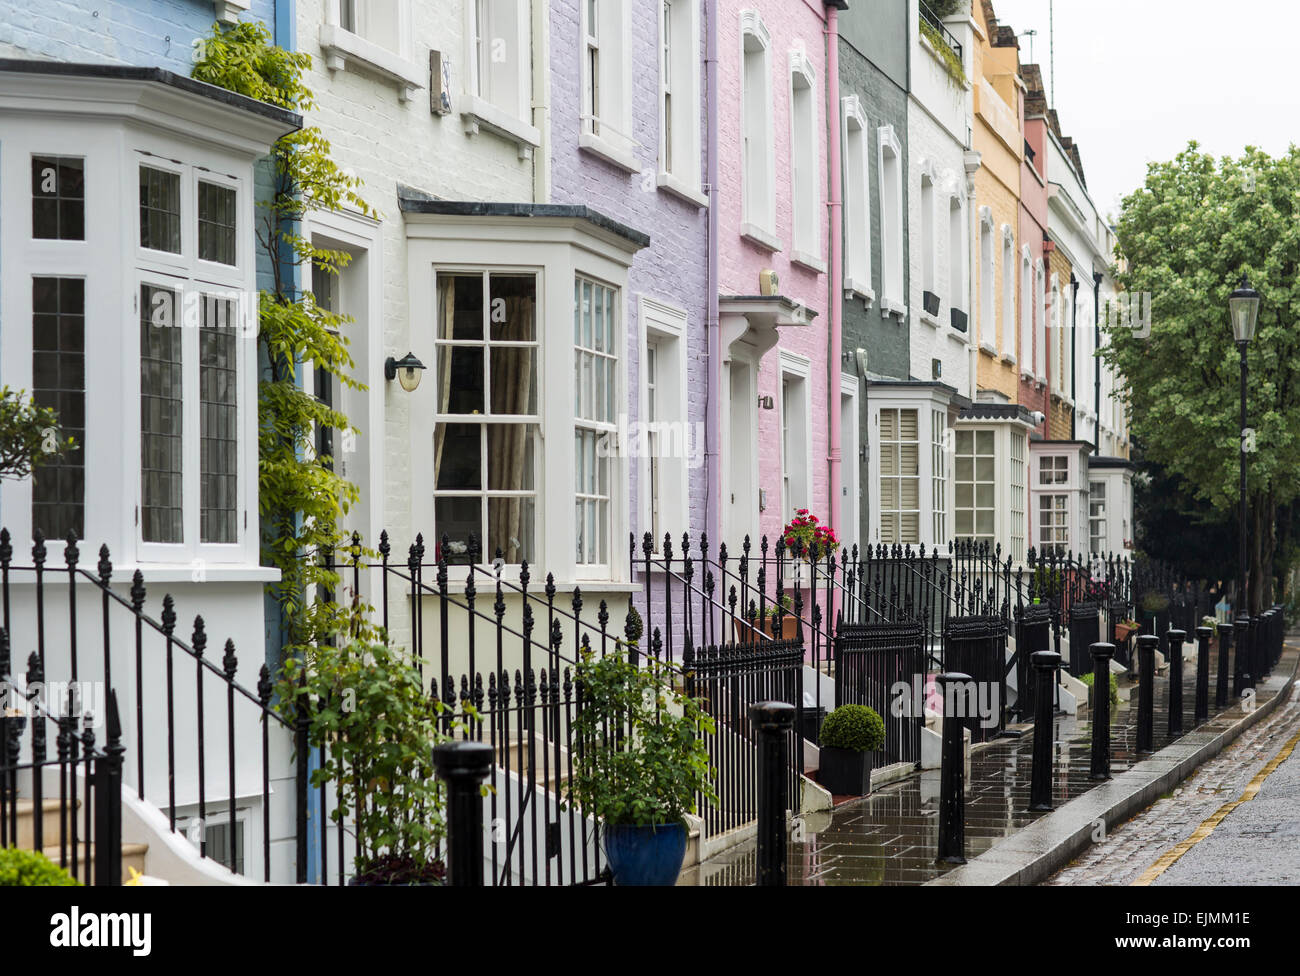 Bunte Reihe von Häusern, Bywater Street, Chelsea, London Stockfoto